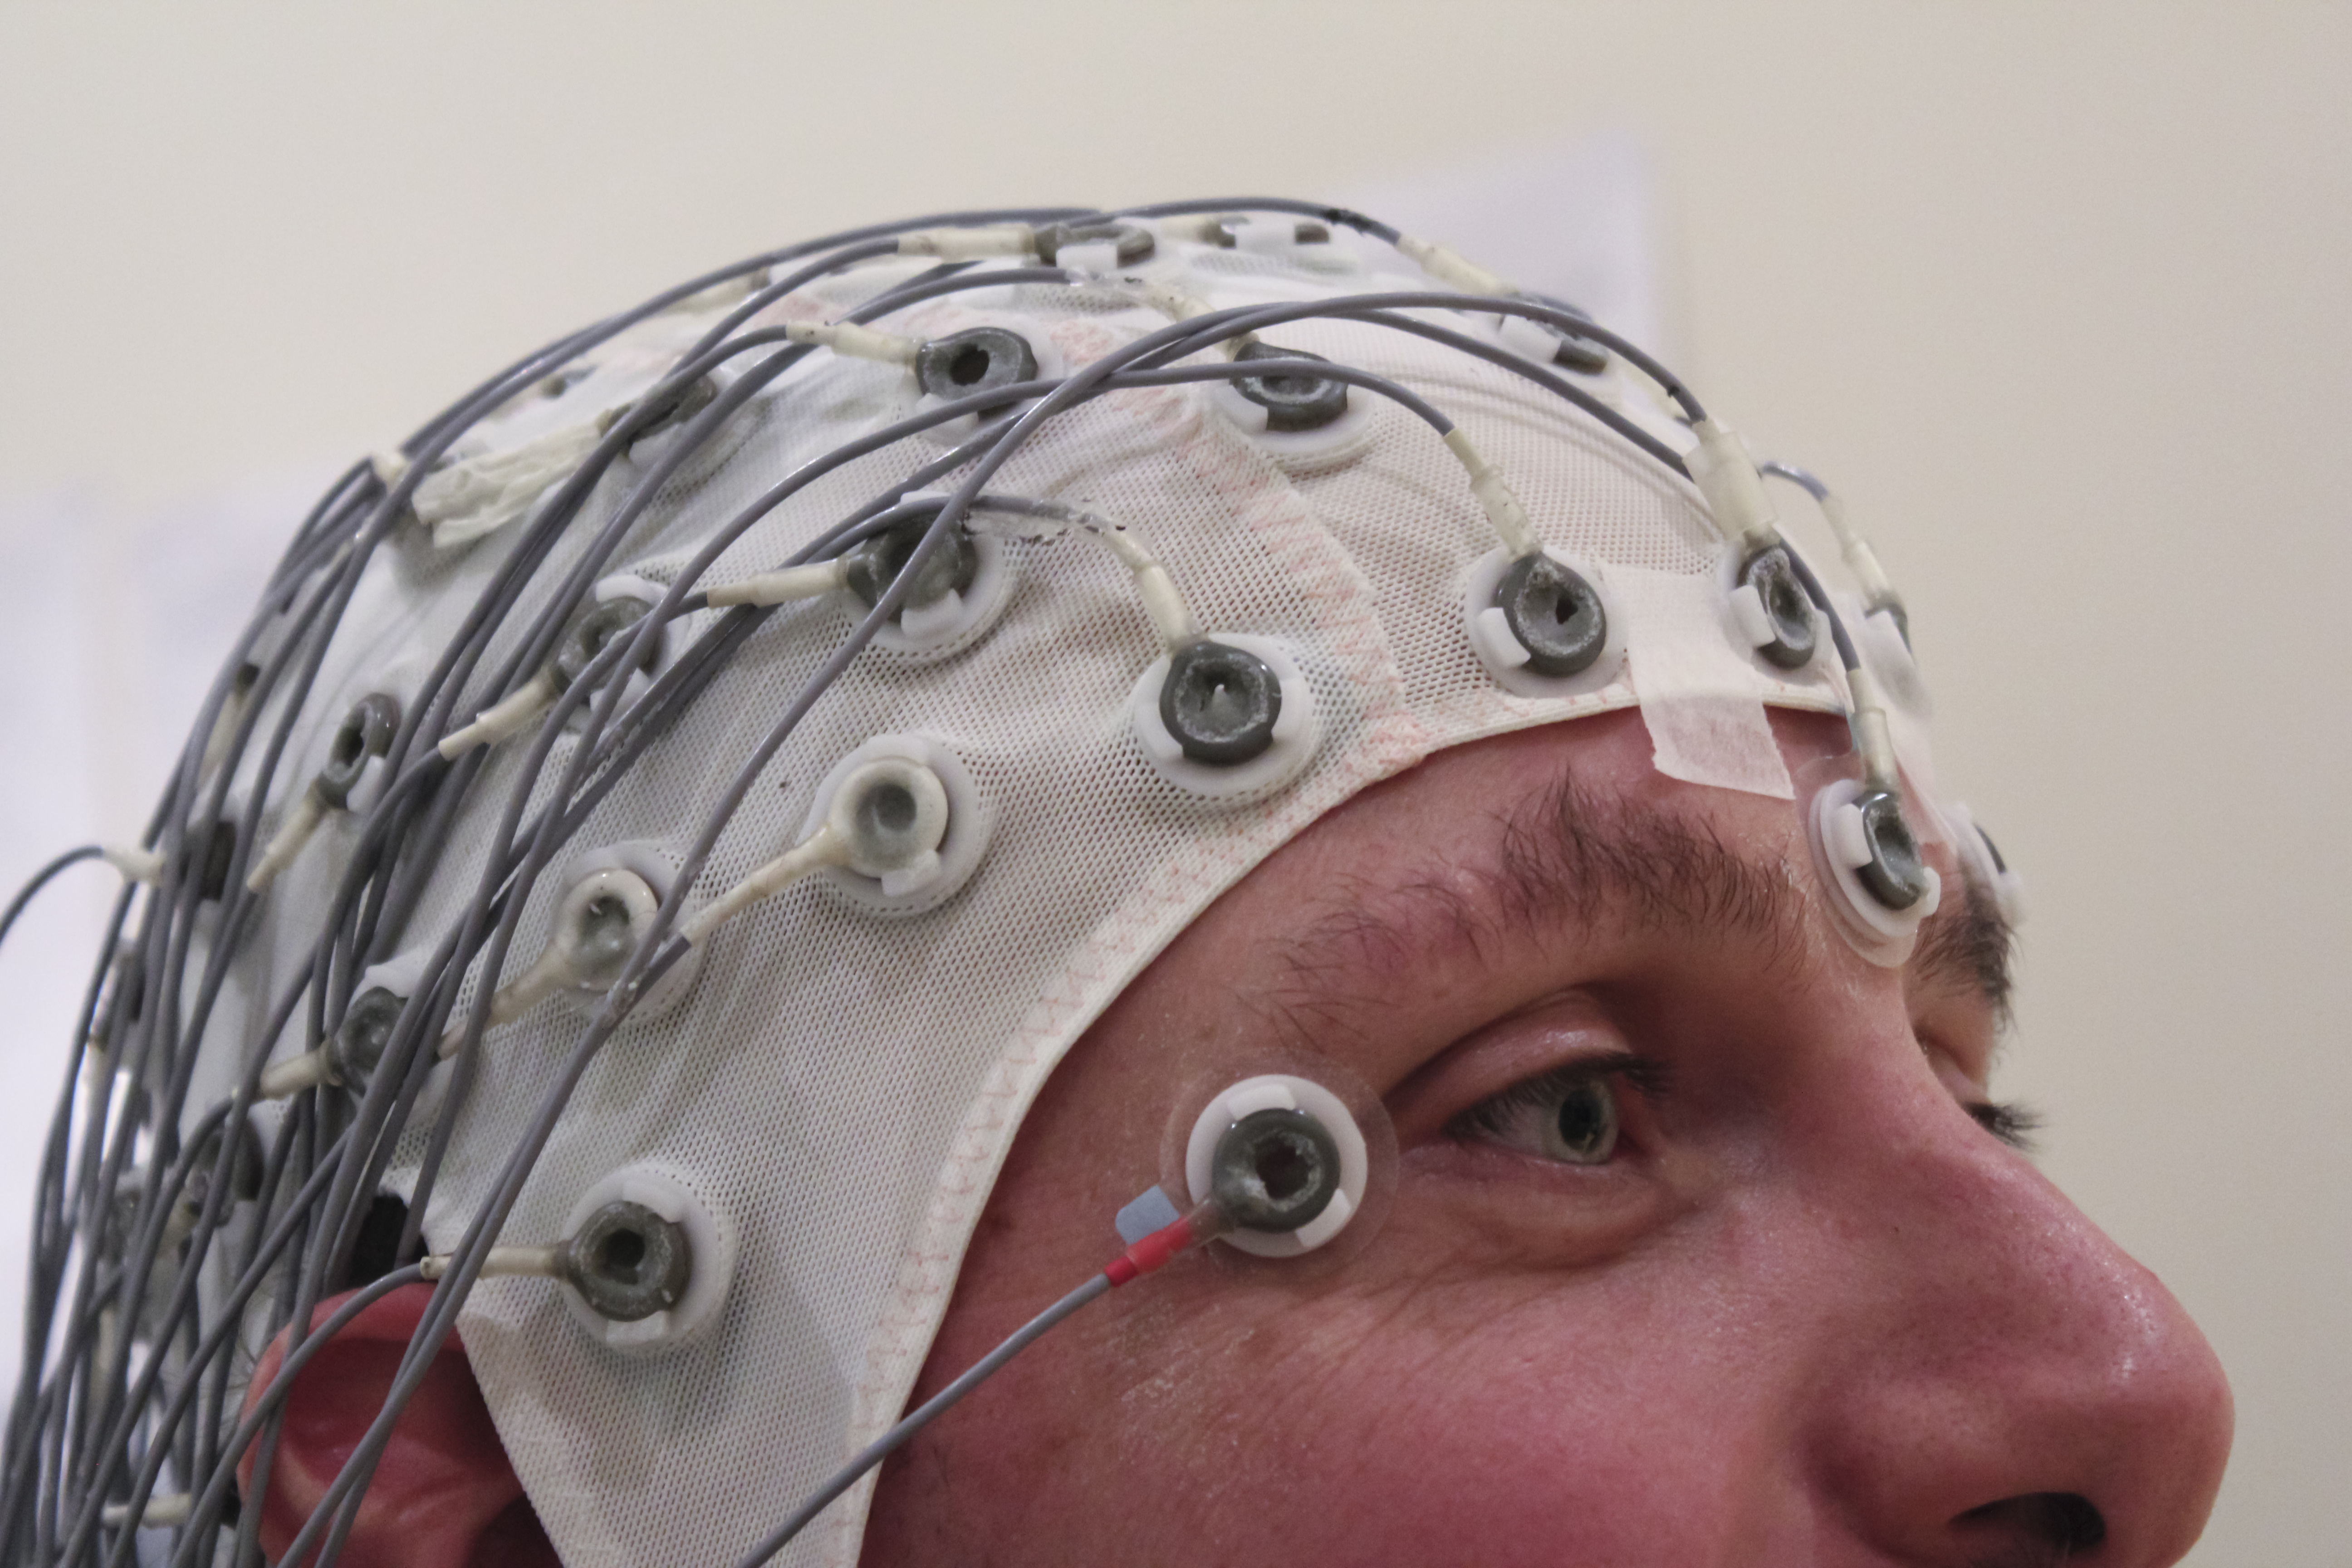 Etterhvert som EEG blir mer og mer vanlig kan det øke muligheten for at svært personlig informasjon kommer på avveie.